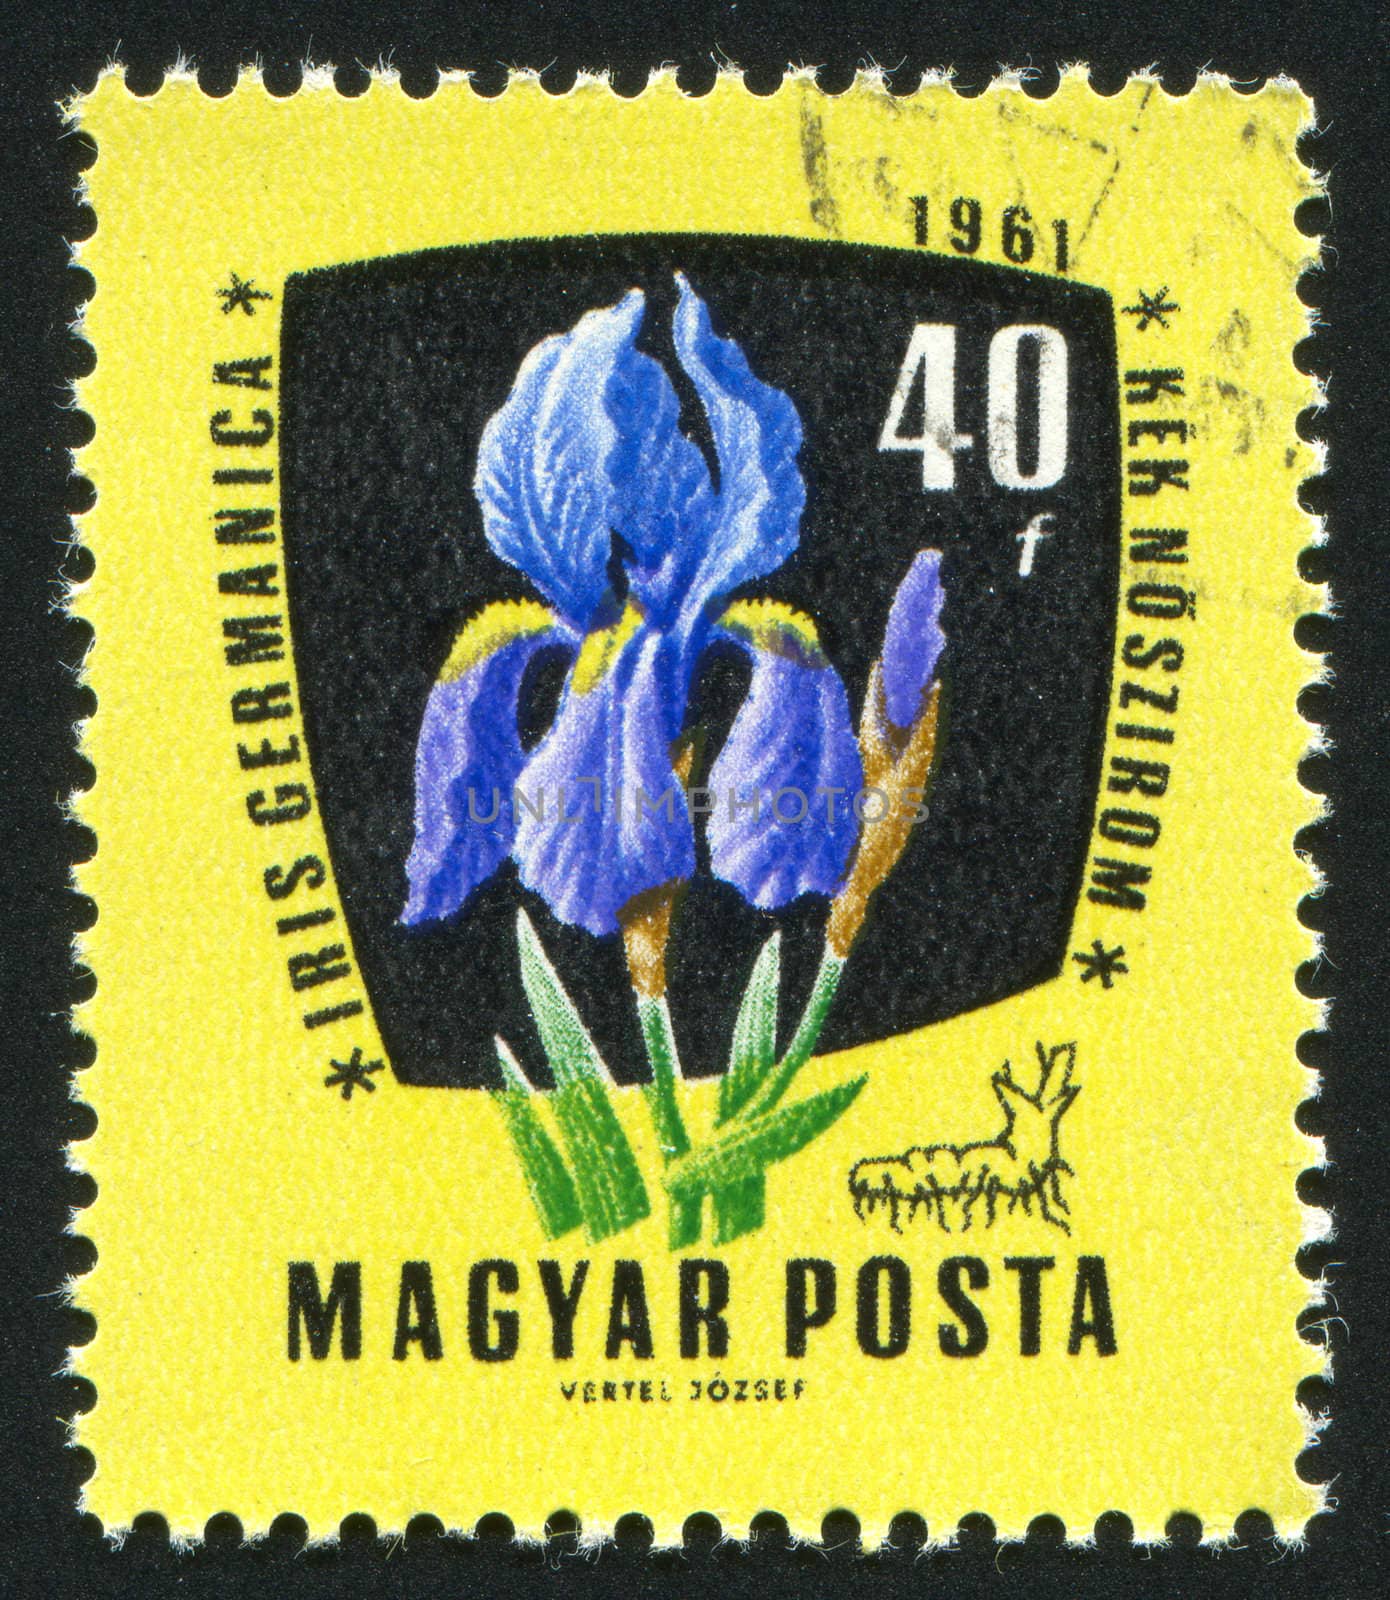 Blue iris flower by rook